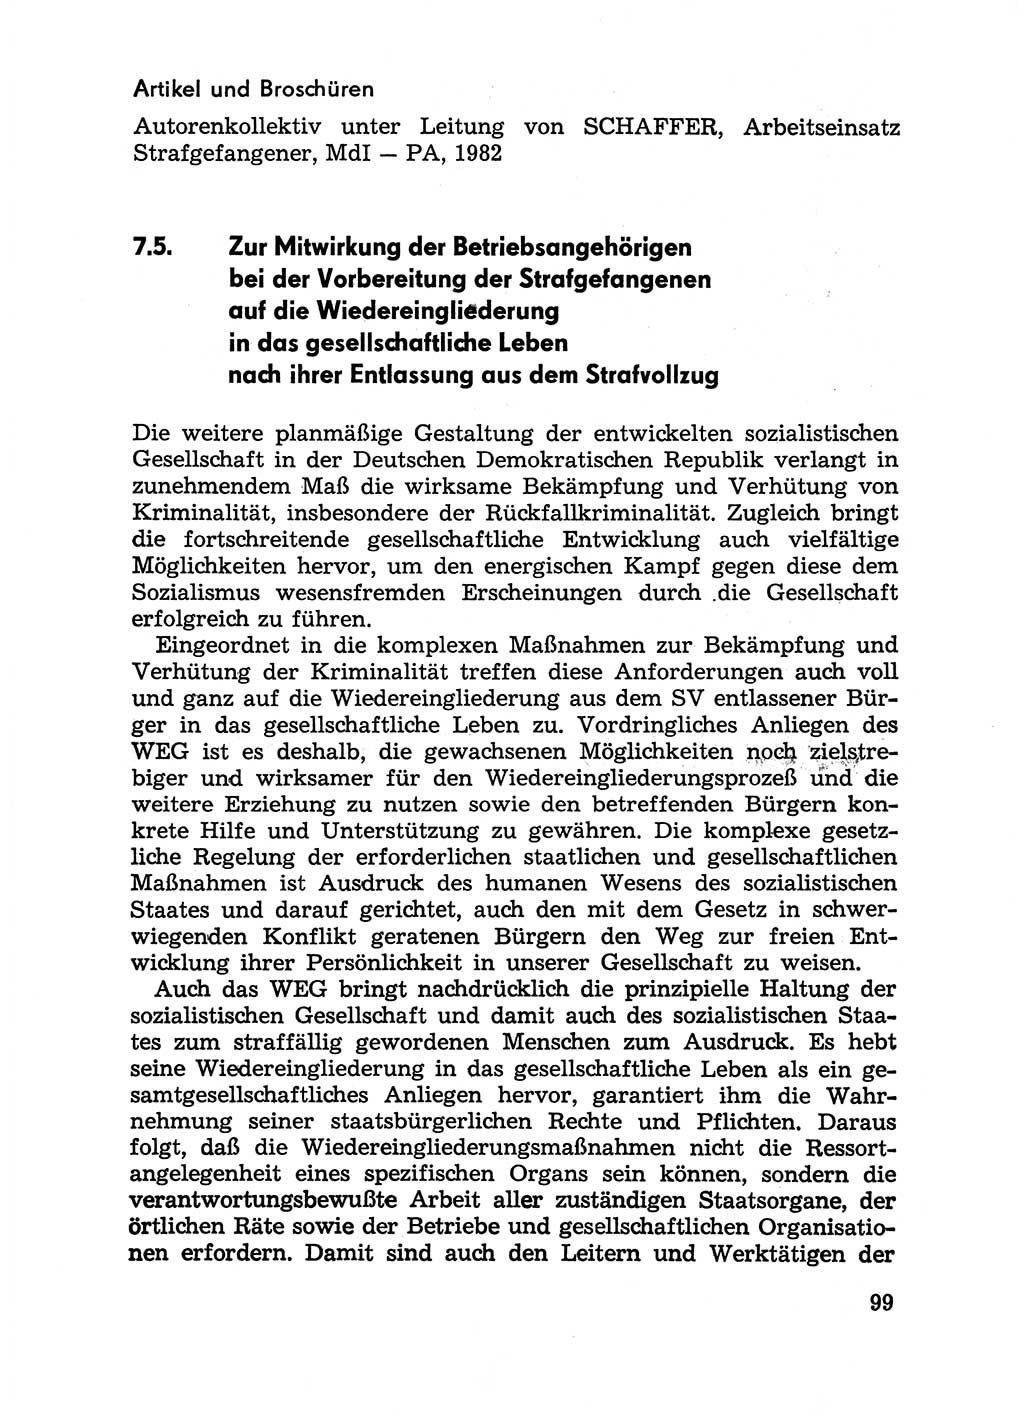 Handbuch für Betriebsangehörige, Abteilung Strafvollzug (SV) [Ministerium des Innern (MdI) Deutsche Demokratische Republik (DDR)] 1981, Seite 99 (Hb. BA Abt. SV MdI DDR 1981, S. 99)